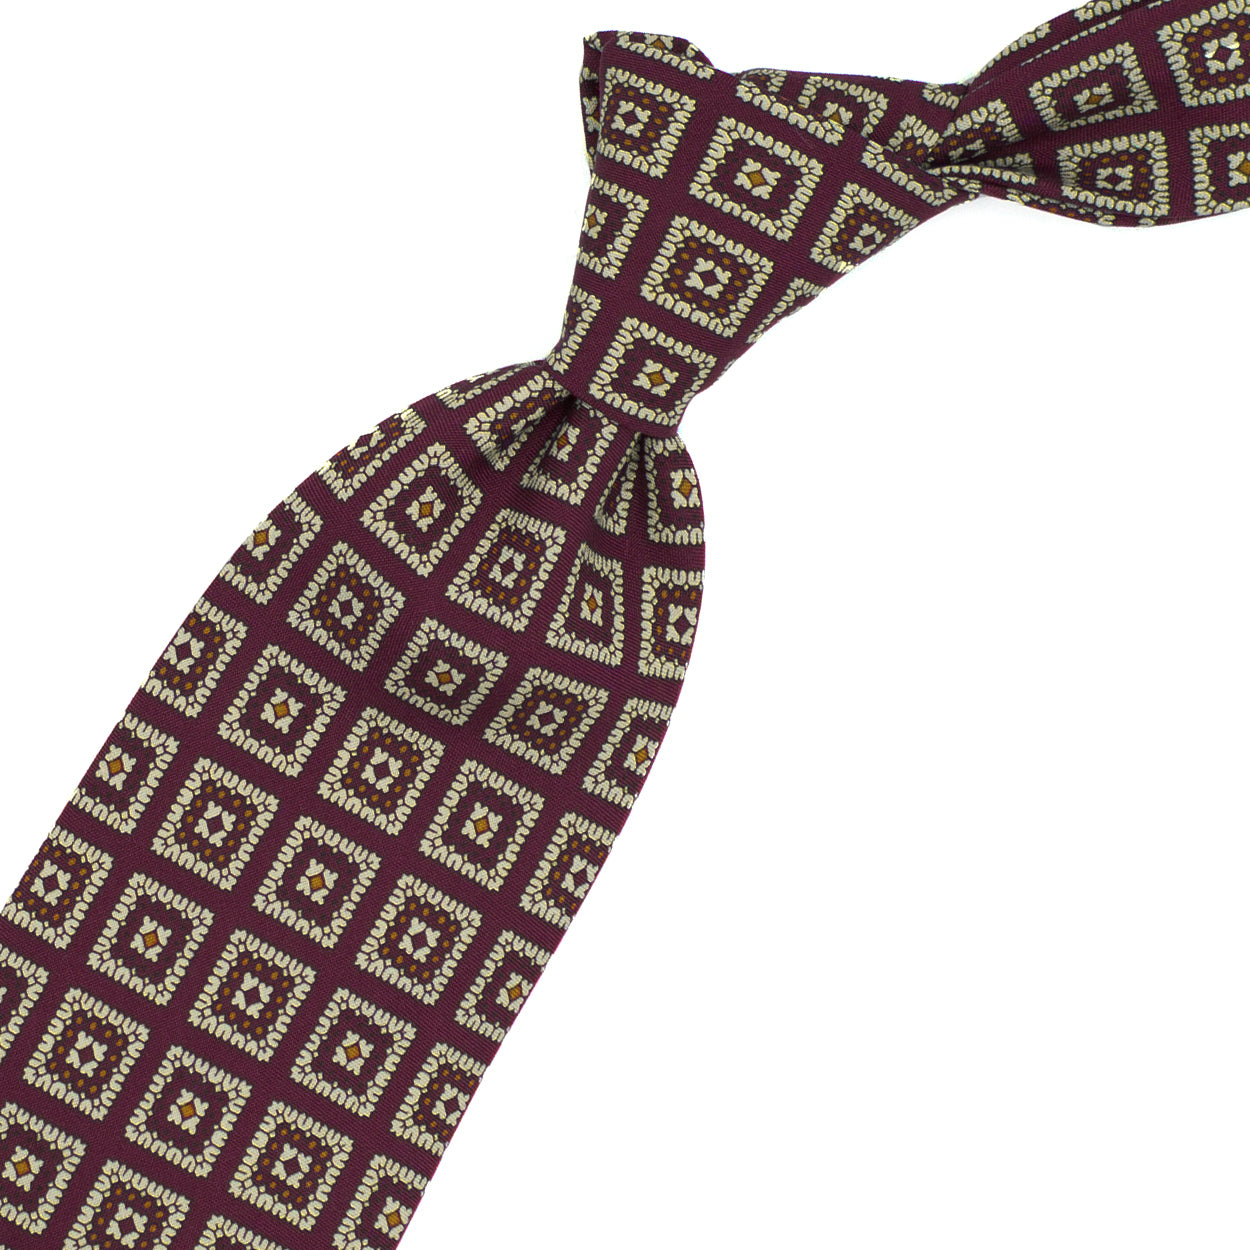 Bordeaux tie with beige squares